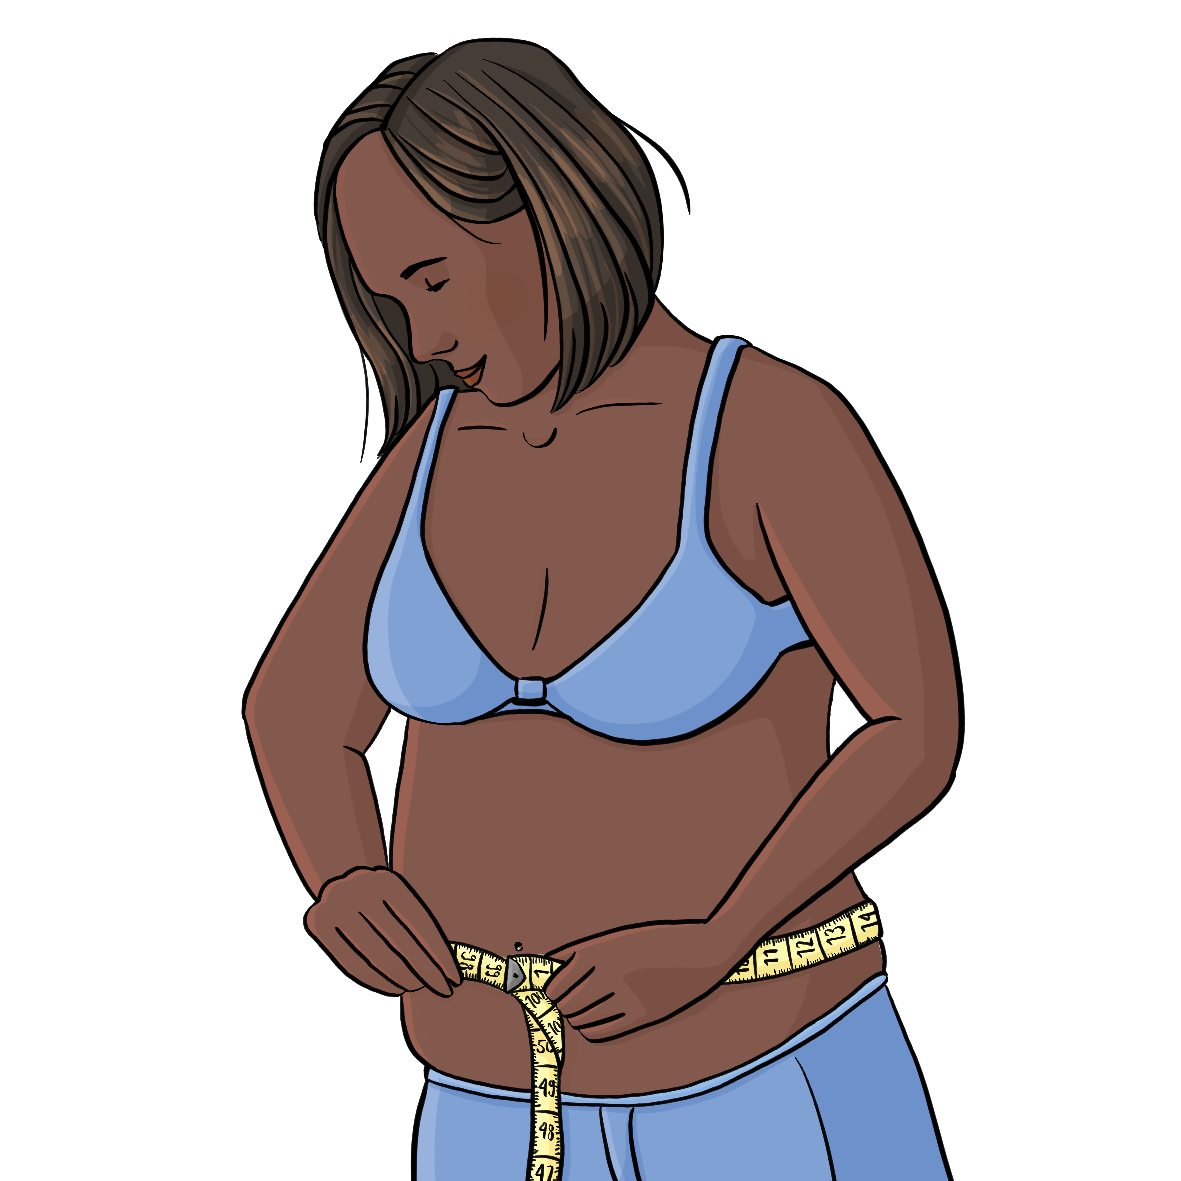 Eine Frau hält ein Maßband um ihren nackten Bauch. Sie trägt einen BH.